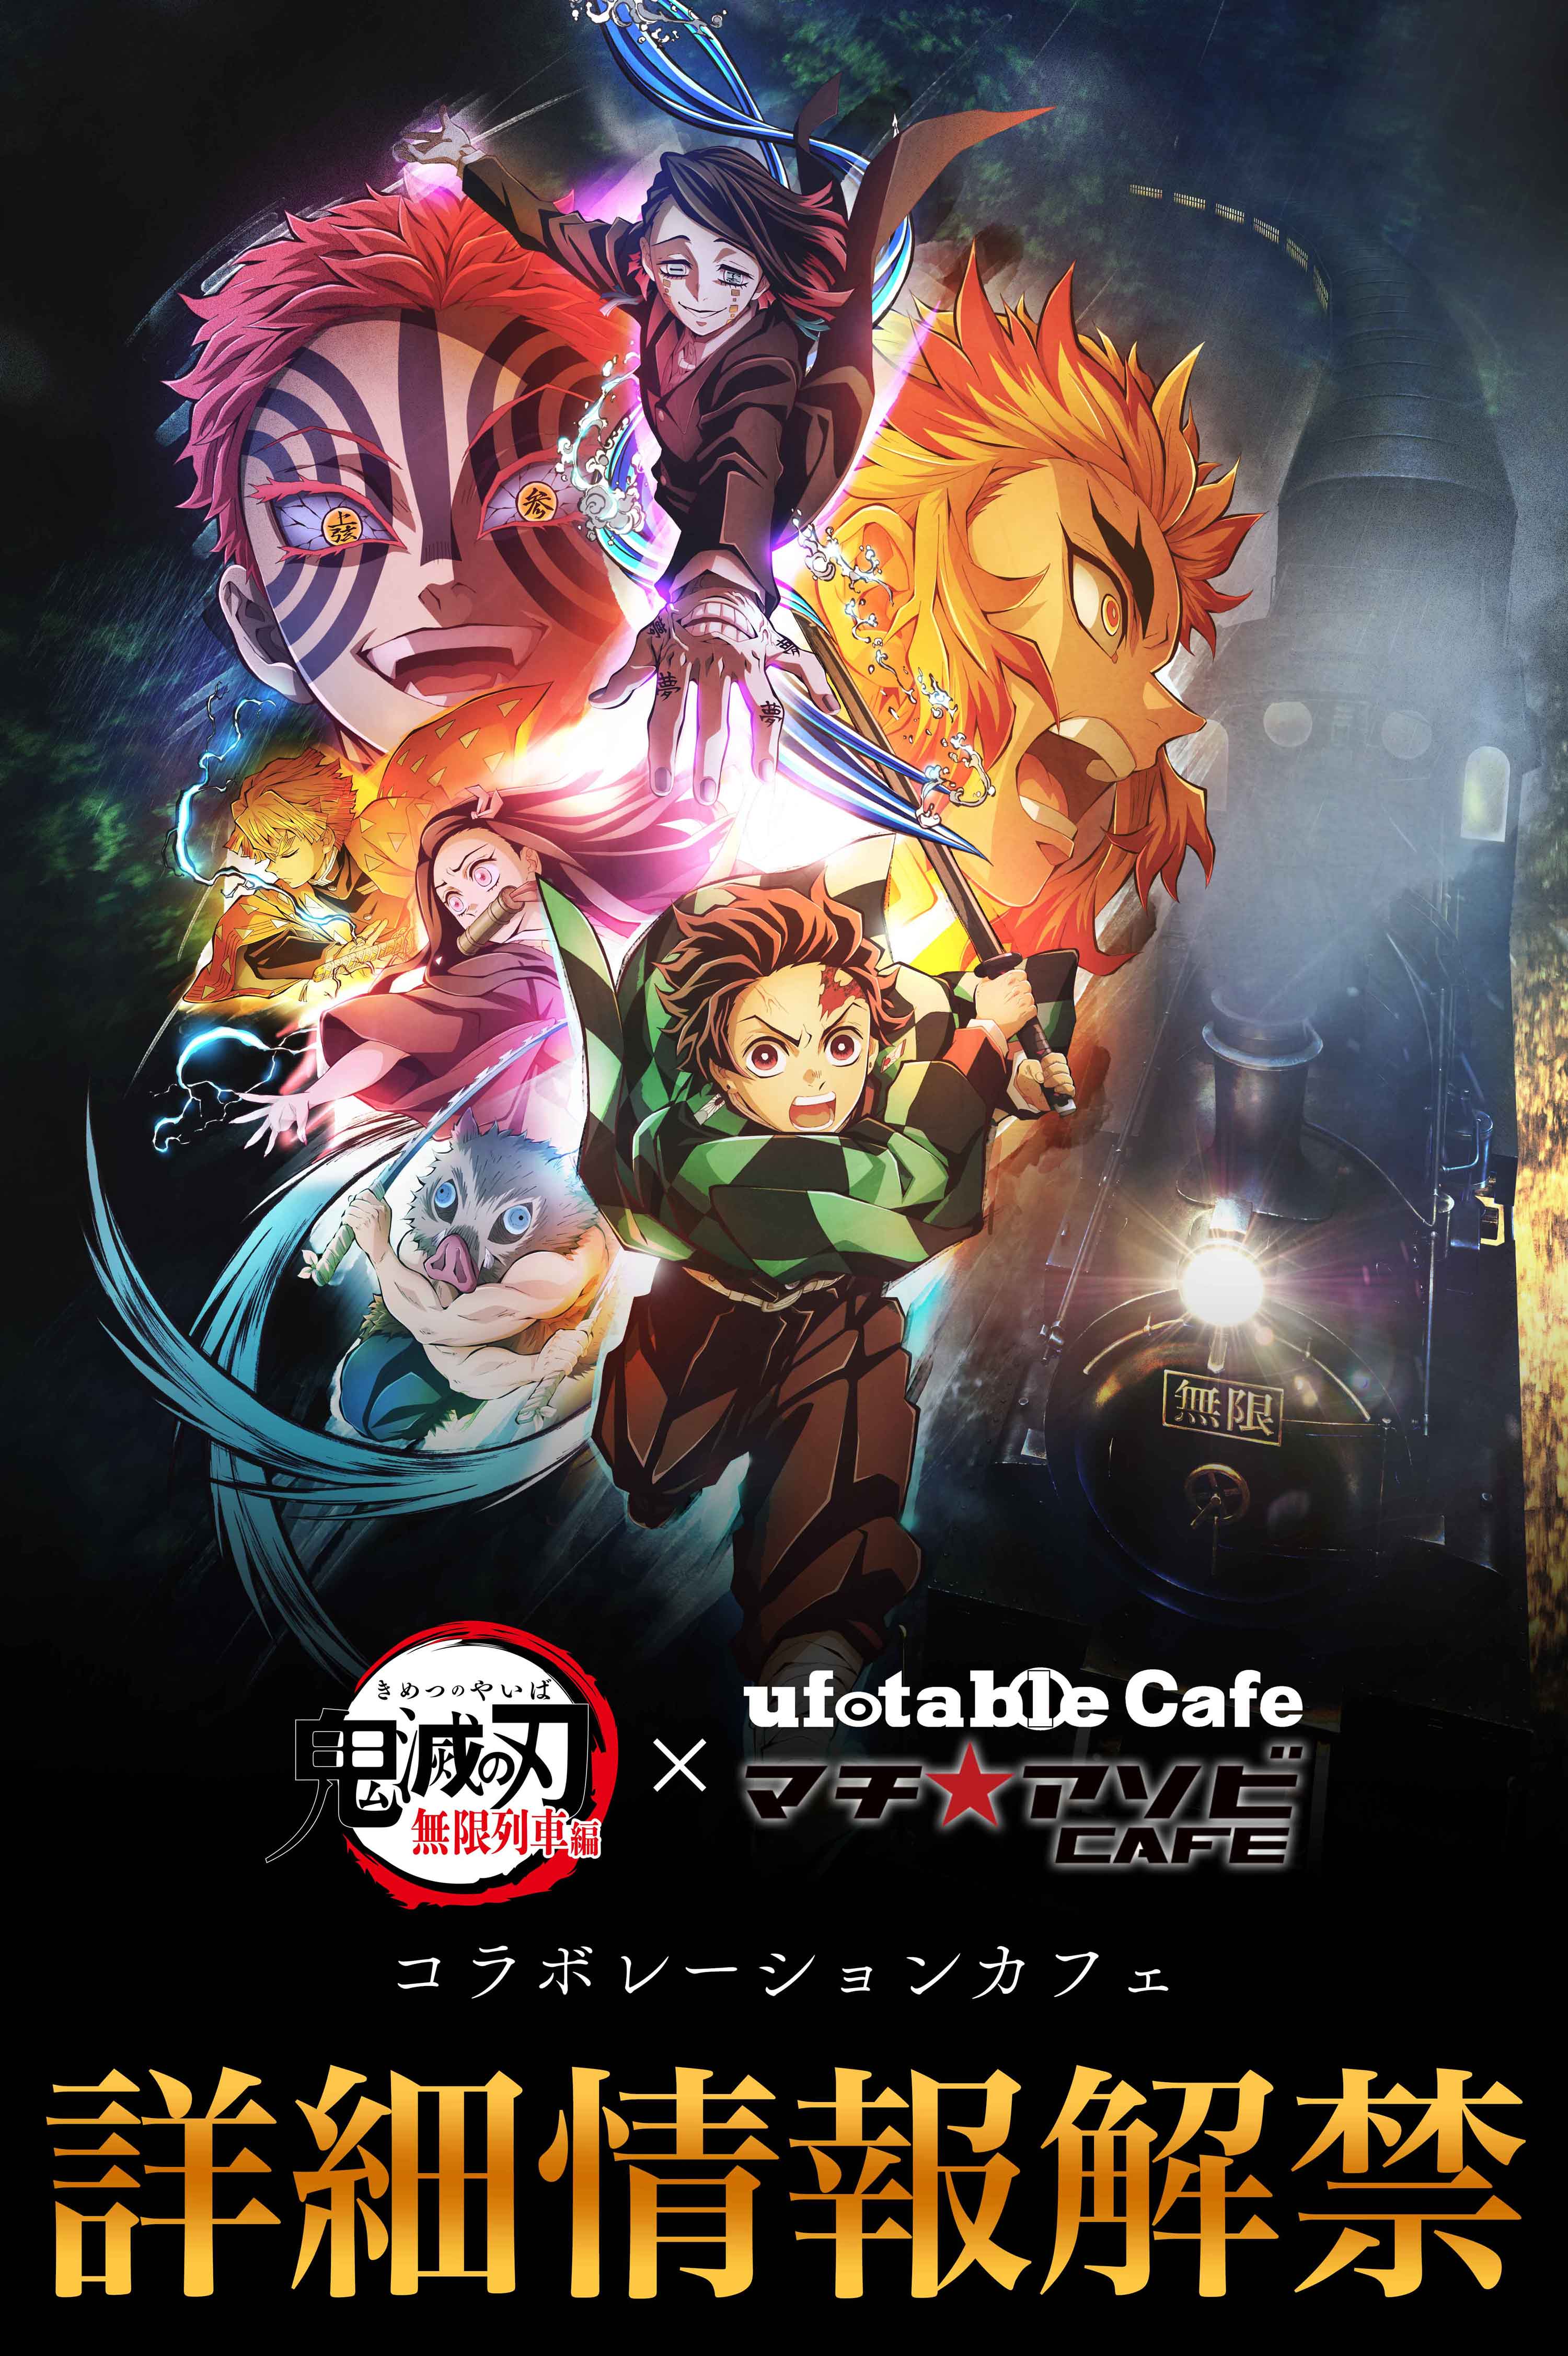 【東京】ufotableCafeTOKYO 11/16(火)  テレビアニメ「鬼滅の刃」無限列車編 コラボレーションカフェ